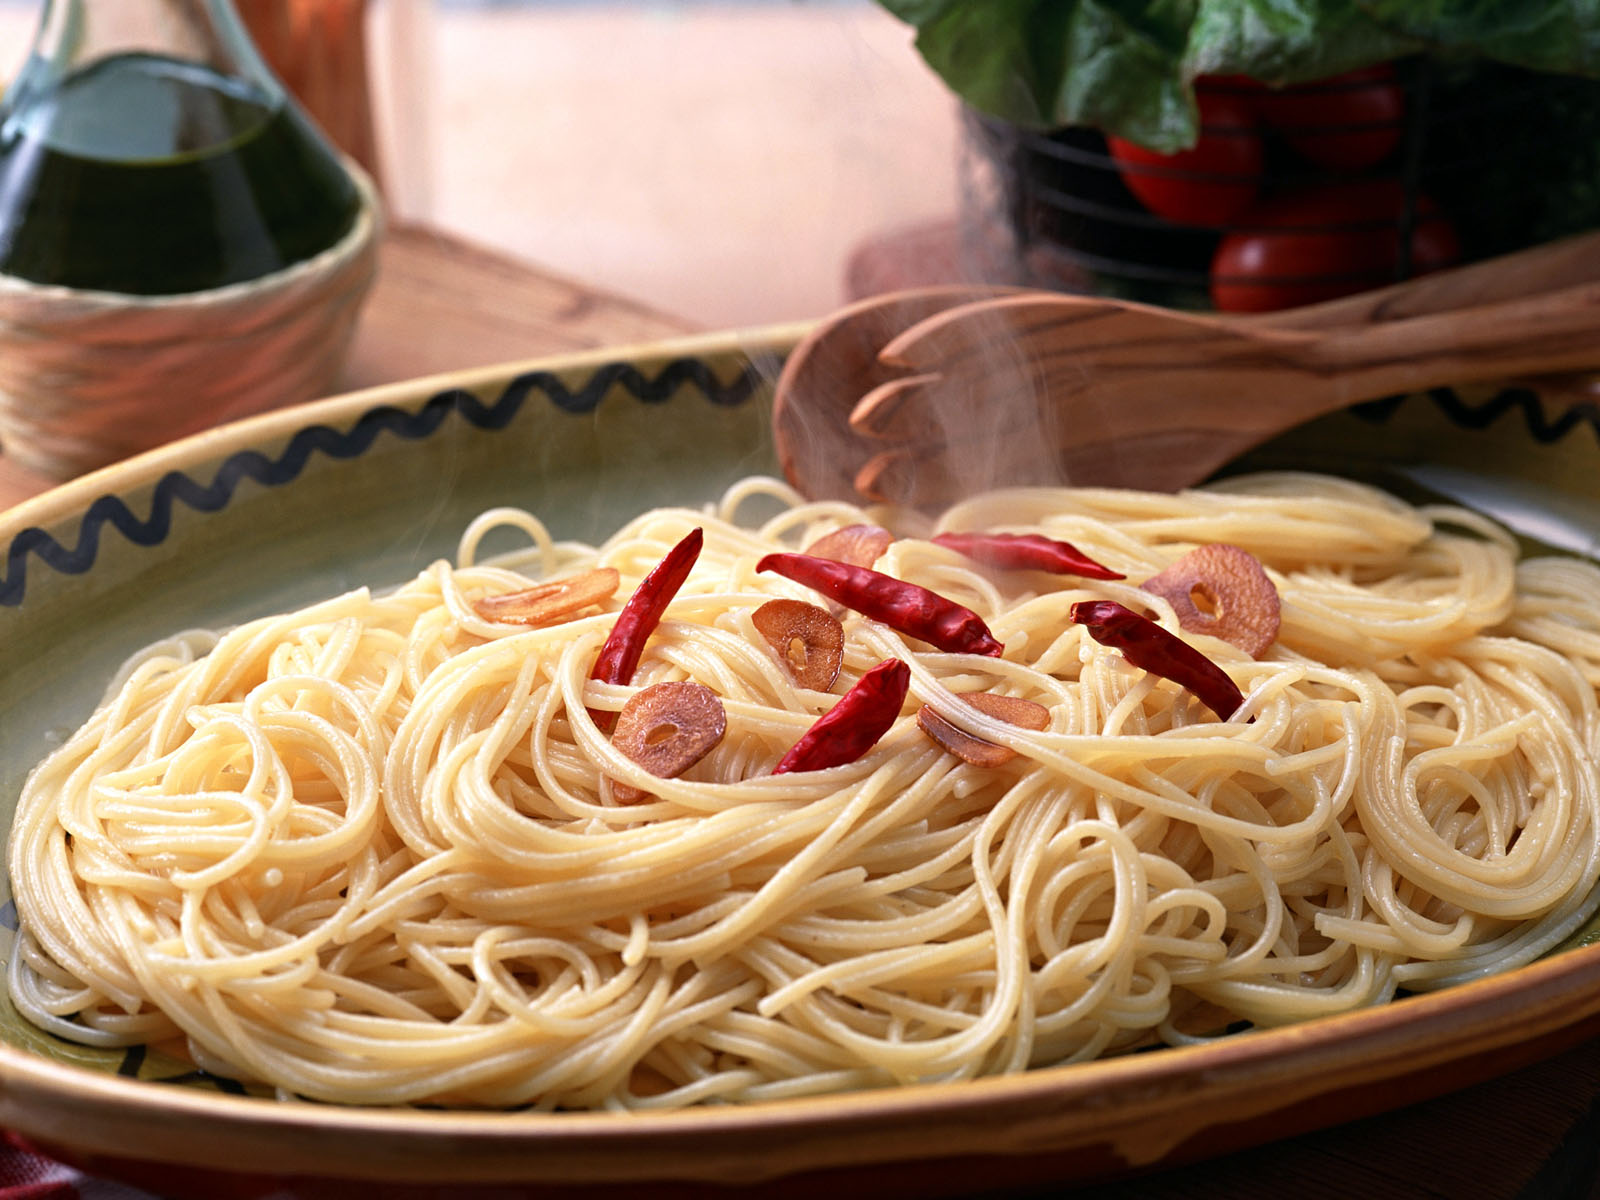 тарелки лапша макароны plates noodles pasta загрузить